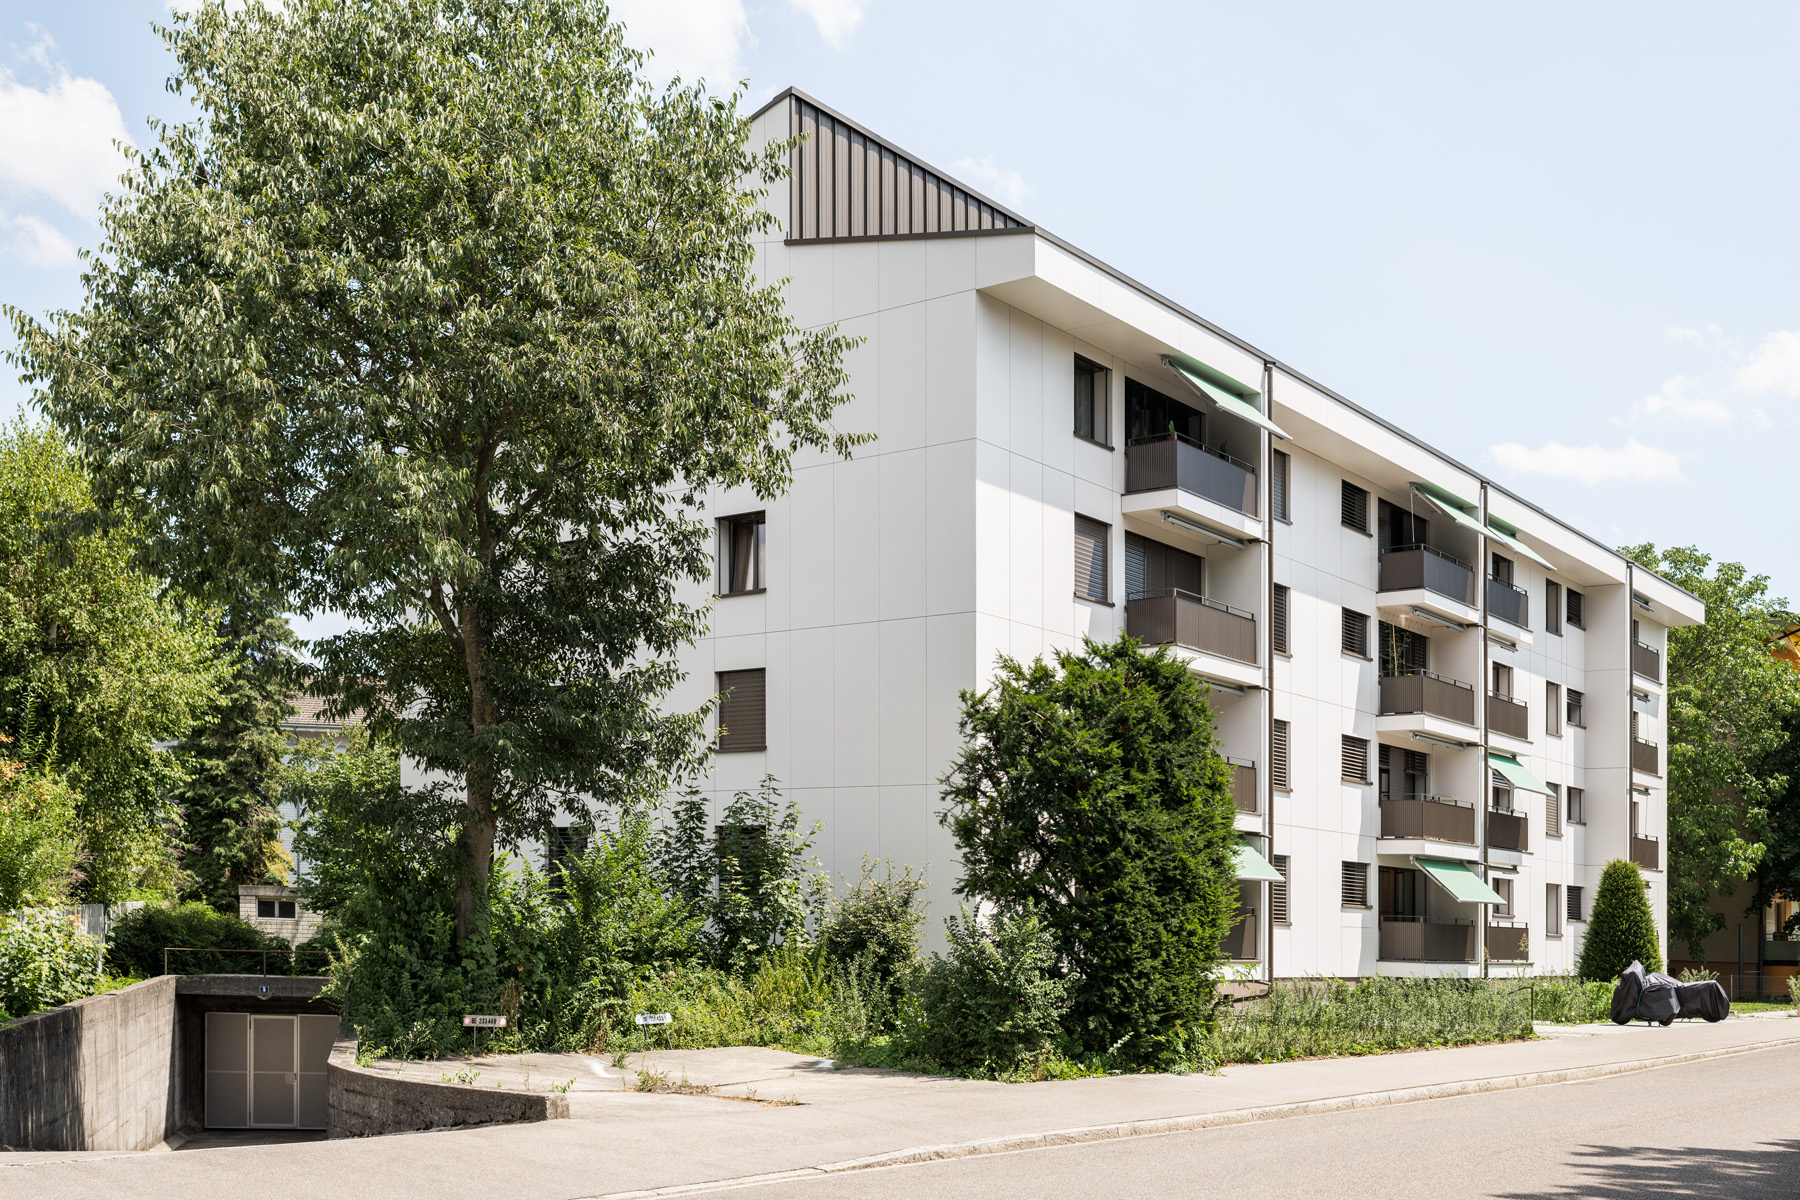 Gesamtsanierung Wohn- und Gewerbeliegenschaft Bälliz, Thun im Auftrag der Credit Suisse Anlagestiftung Real Estate Switzerland